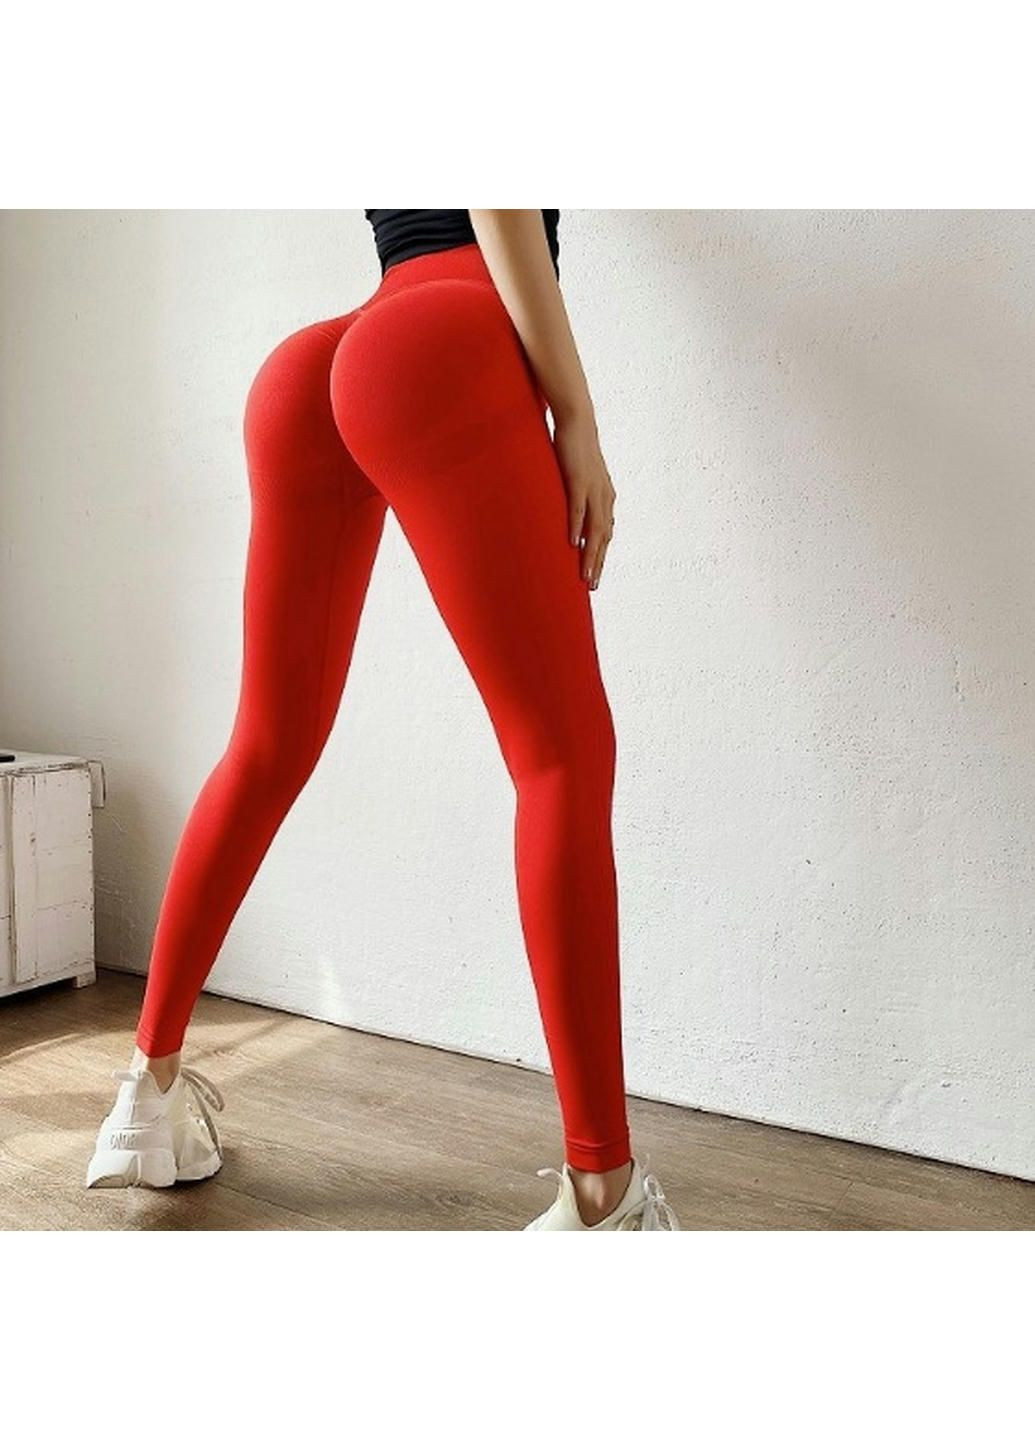 Комбинированные демисезонные леггинсы женские спортивные 10146 xl ярко-красные Fashion